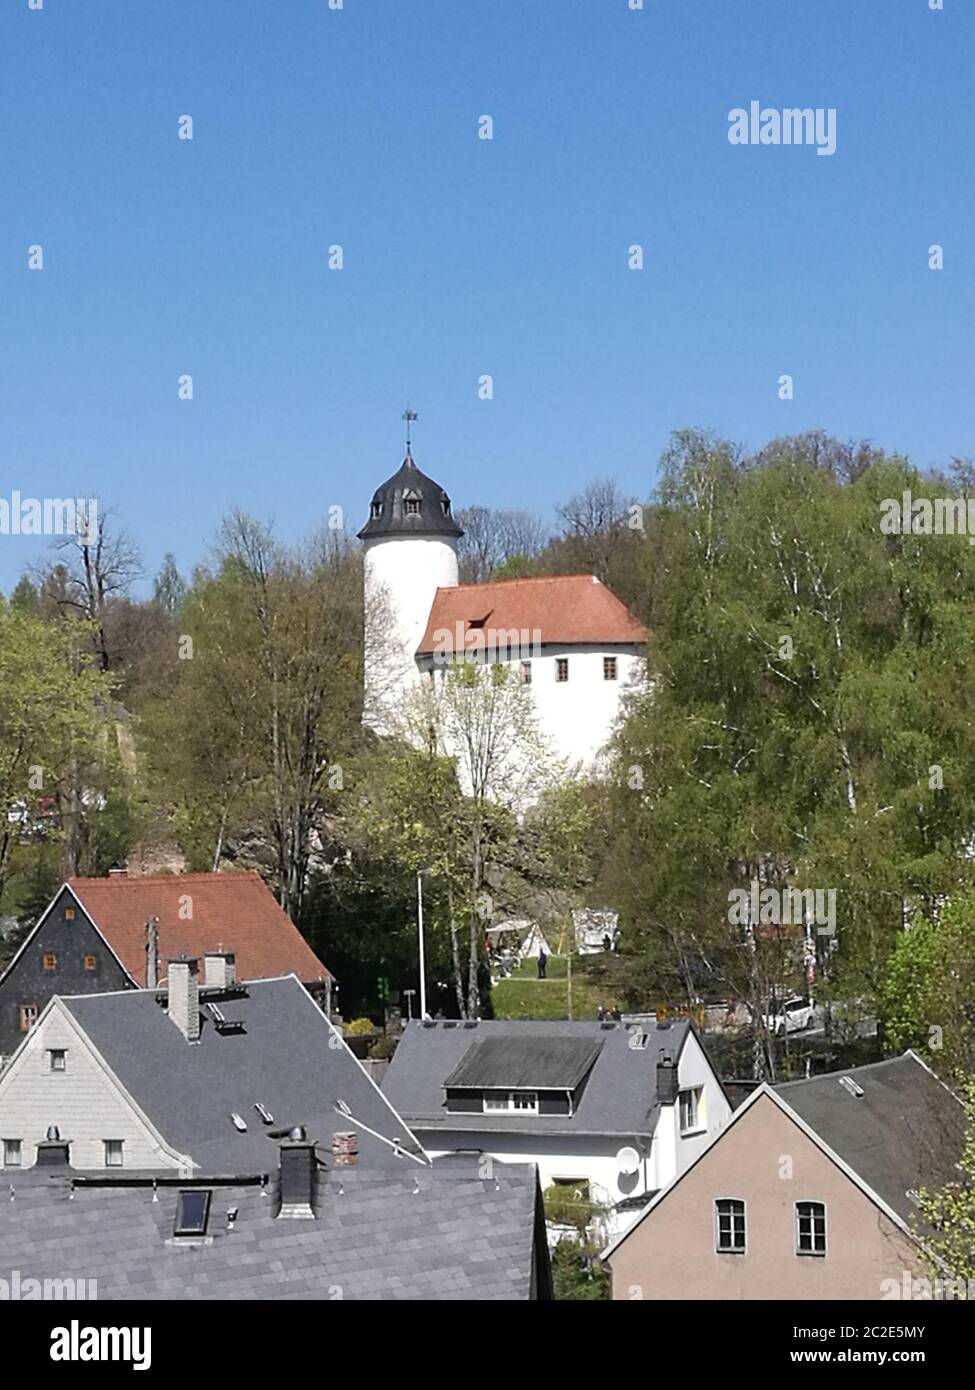 Blick über Hausdächer zur Burg Rabenstein, mittelalterliche Burganlage in Chemnitz in Sachsen, Deutschland, weiße Burganlage mit rotem Dach und einem Banque D'Images